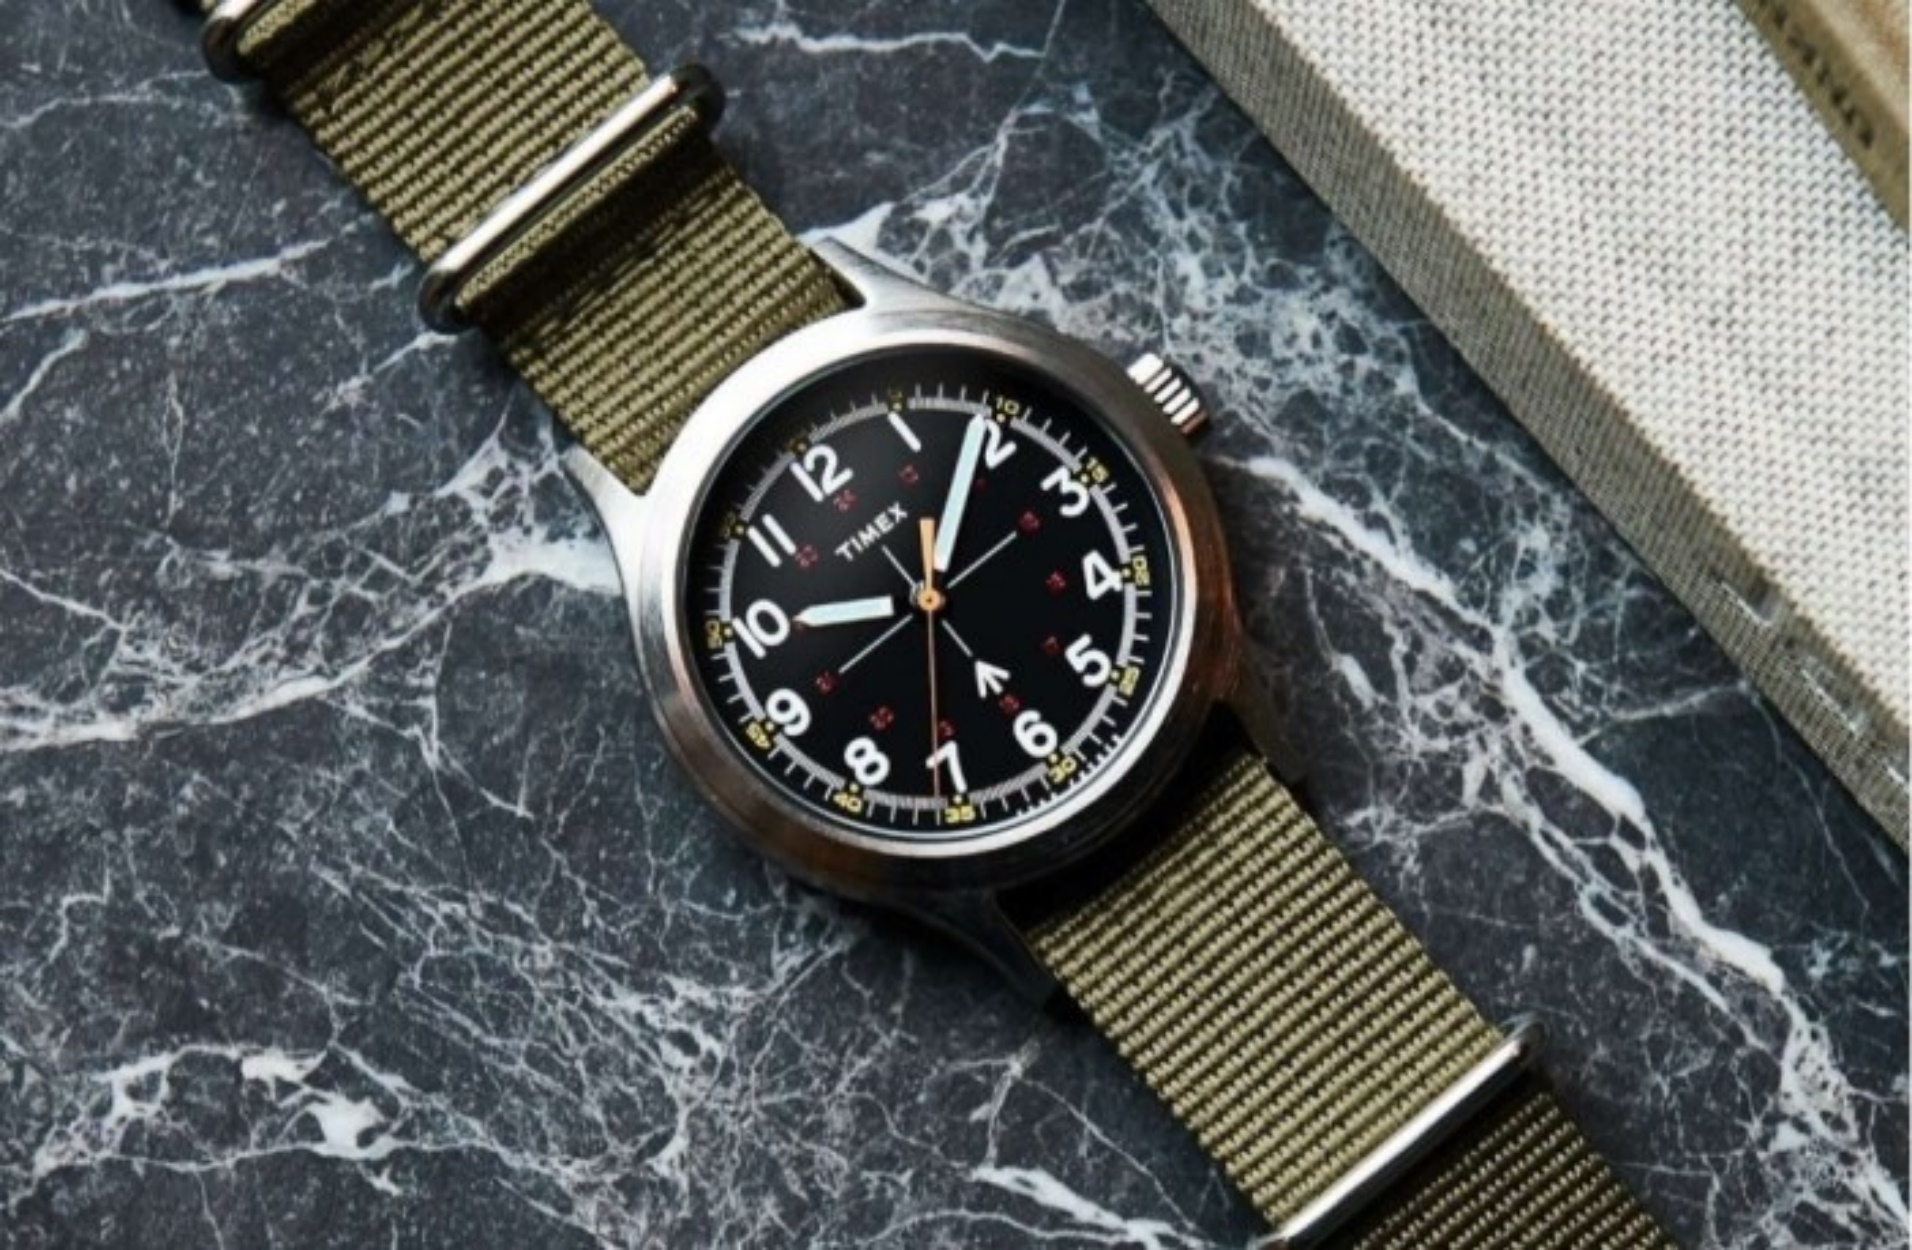 5 πανέμορφα ρολόγια από την Timex και τον Todd Snyder σε απίστευτη τιμή!